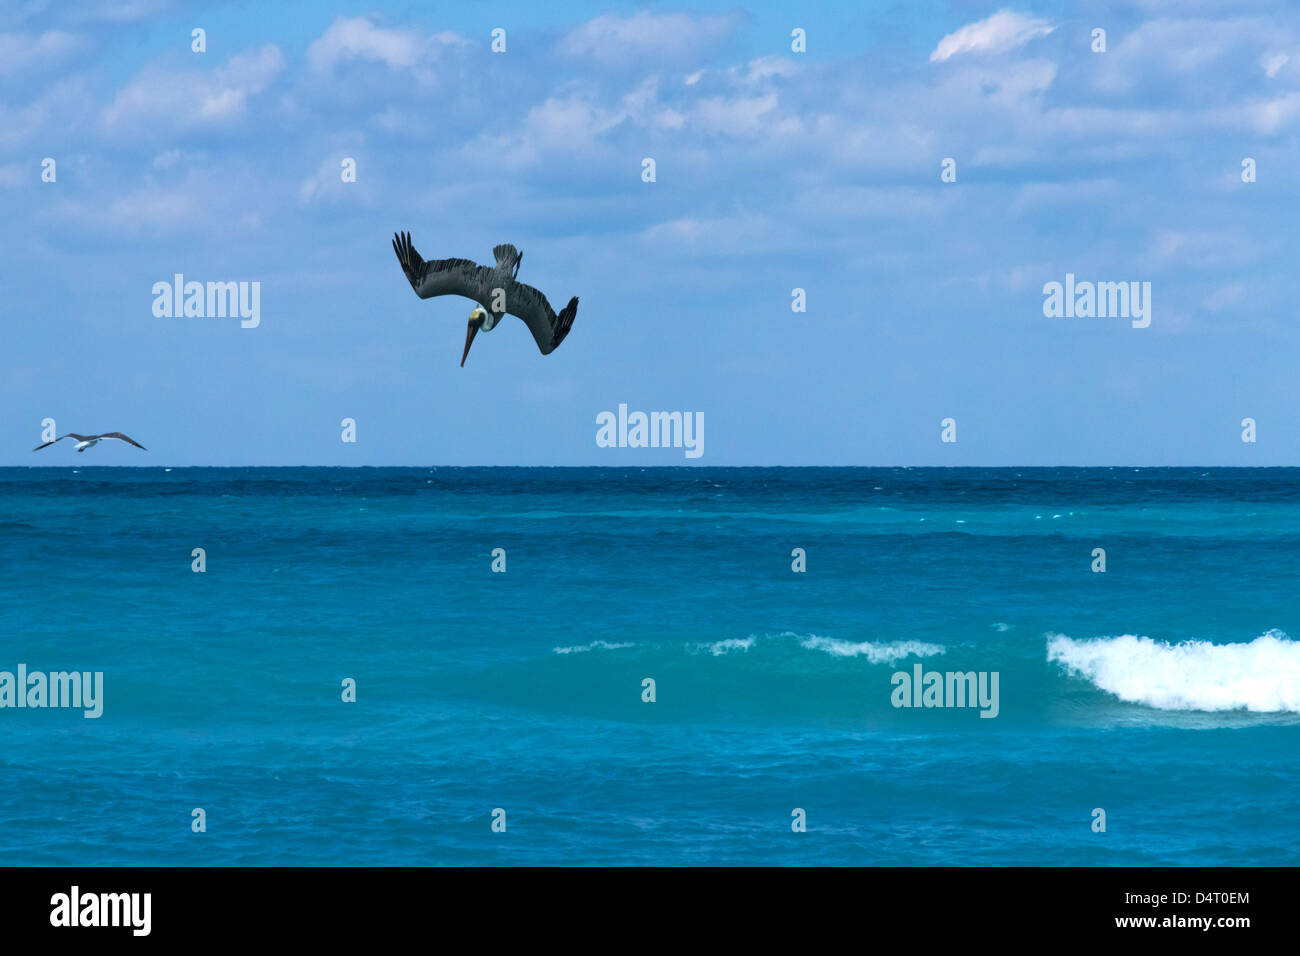 A Pelican Dives for Fish at Varadero Cuba Stock Photo